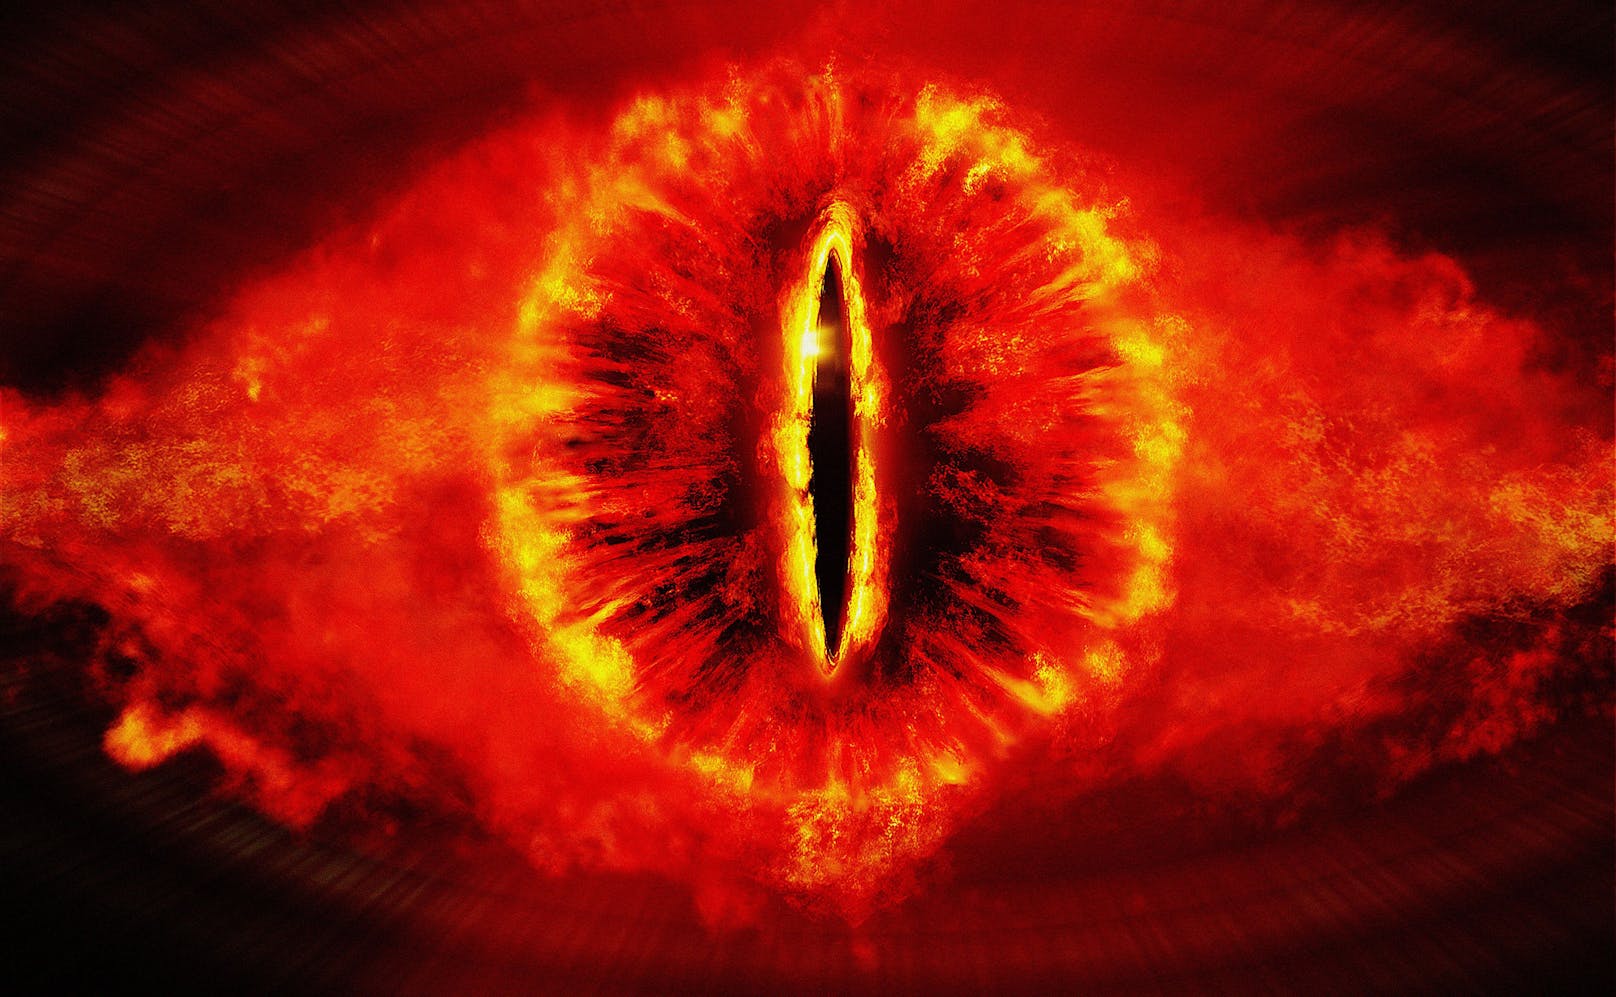 Aufgrund der weithin strahlenden Spitze des Turms fühlen sich viele Israelis, Medien und Twitter-Nutzer an das "Auge Saurons" aus dem Film-Epos "Herr der Ringe" erinnert. Auch die Bezeichnung "Turm des Sauron" fiel schon.